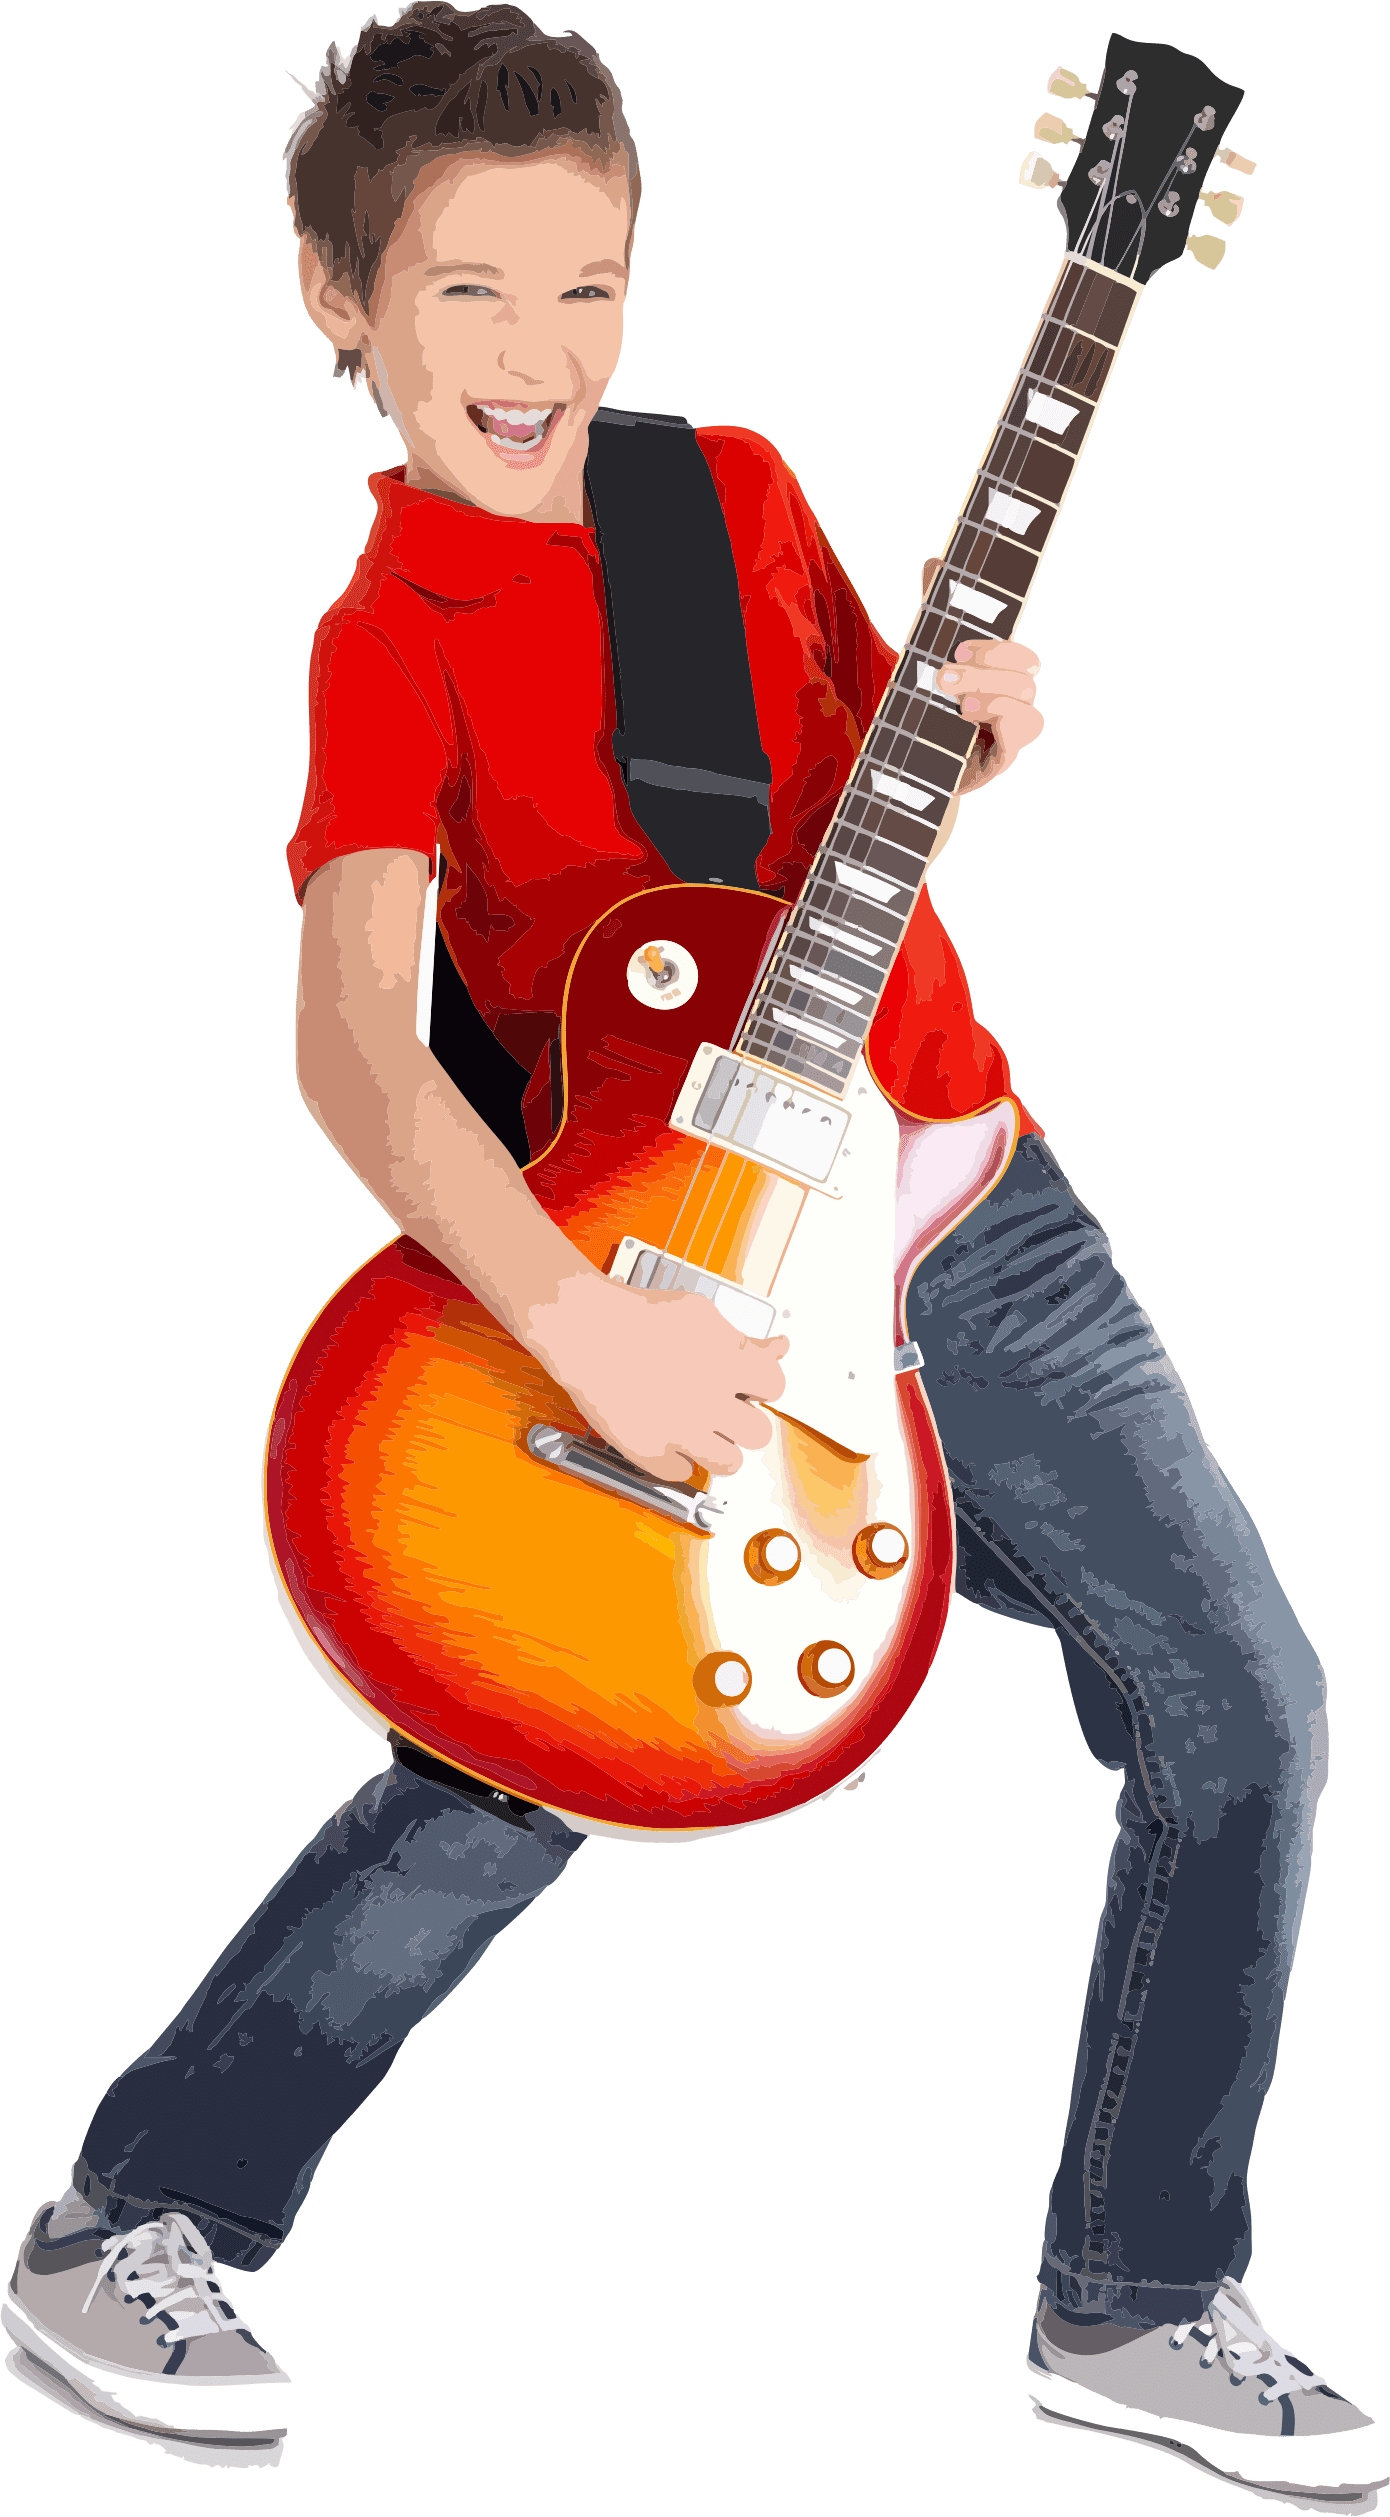 Guitar Classes in gurgaon | Guitar schools in gurgaon ...